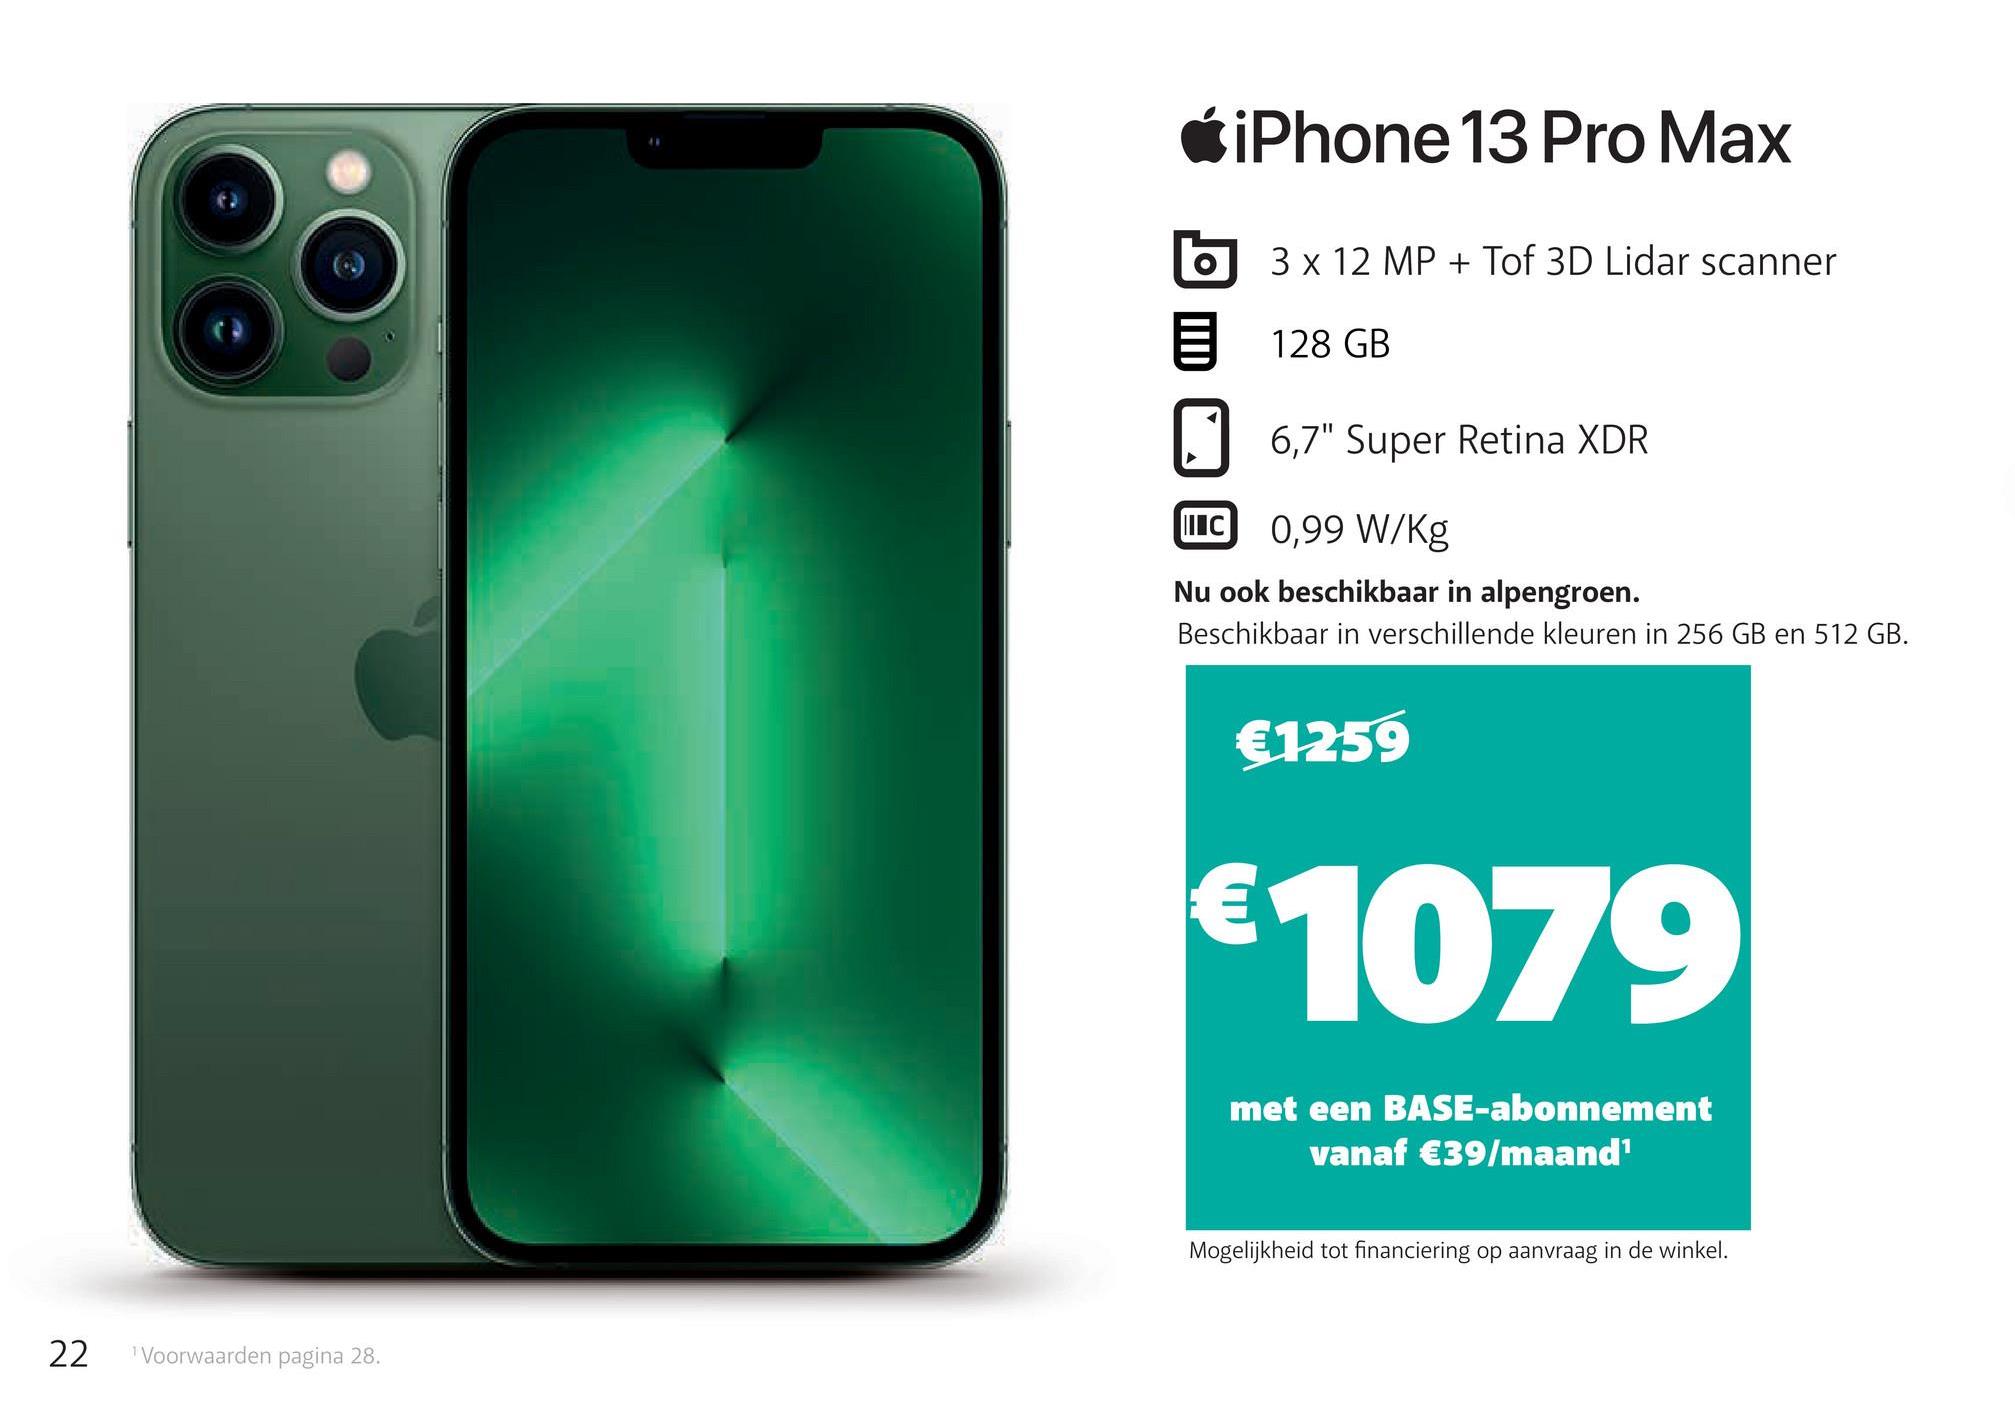 22 Voorwaarden pagina 28.
iPhone 13 Pro Max
O
3 x 12 MP + Tof 3D Lidar scanner
128 GB
6,7" Super Retina XDR
ILC
0,99 W/Kg
Nu ook beschikbaar in alpengroen.
Beschikbaar in verschillende kleuren in 256 GB en 512 GB.
€1259
€1079
met een BASE-abonnement
vanaf €39/maand¹
Mogelijkheid tot financiering op aanvraag in de winkel.